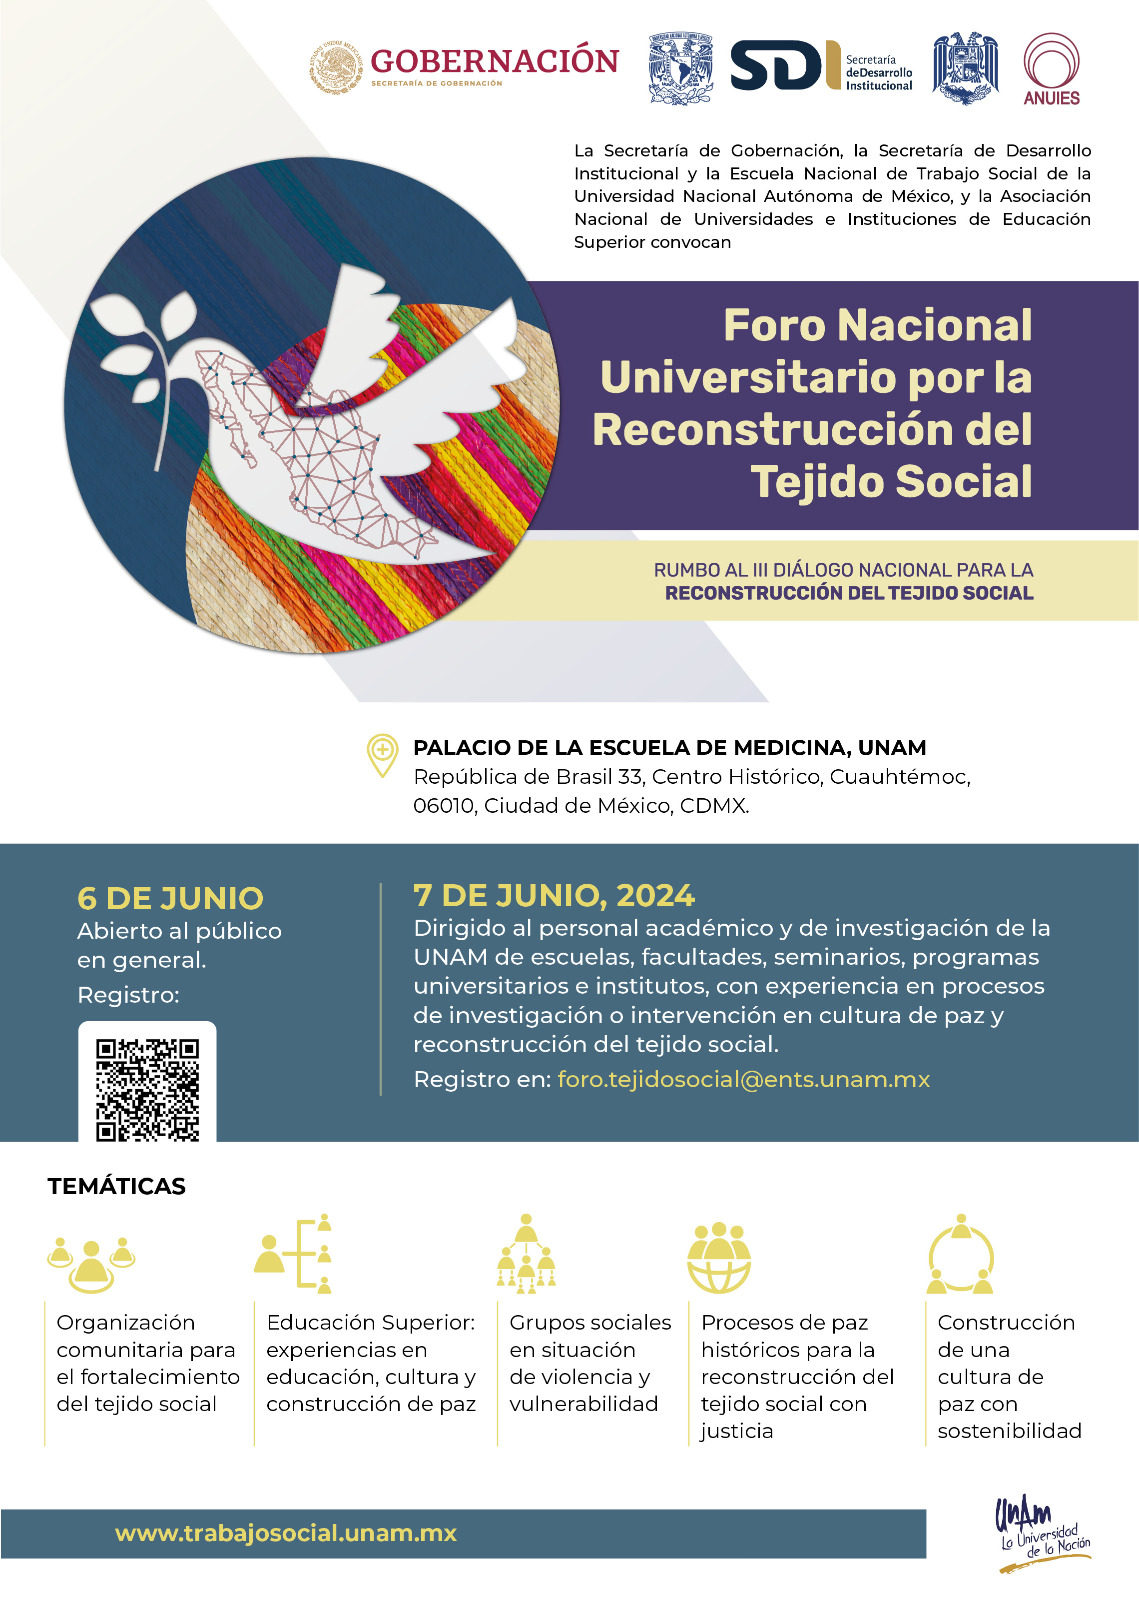  Foro Nacional Universitario por la reconstrucción del Tejido Social 